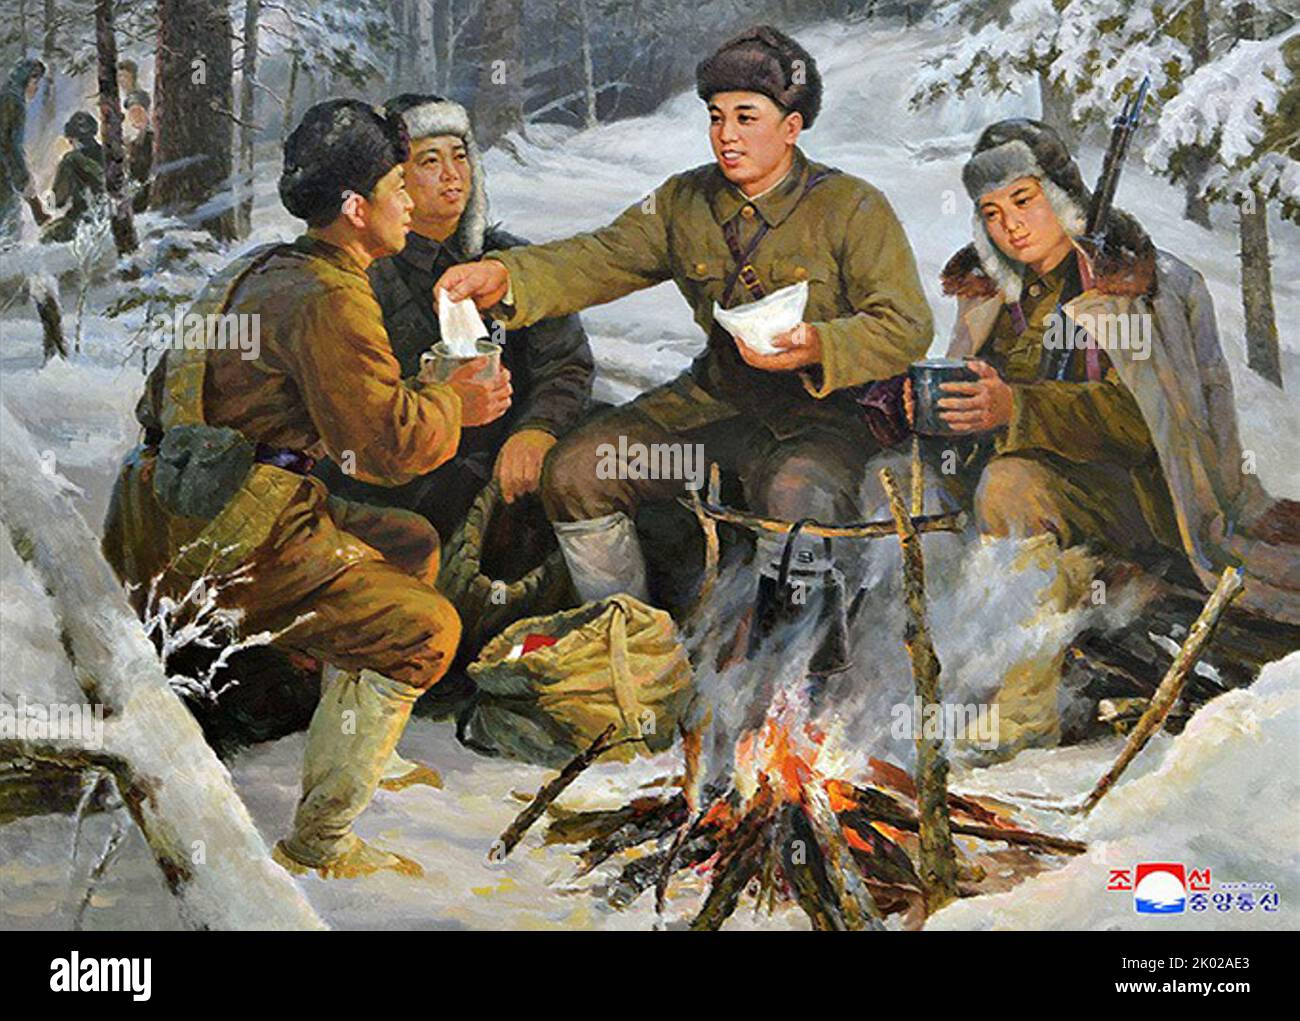 Kim il Sung avec des soldats pendant la guerre contre le Japon vers 1944. Peinture de style propagande. Banque D'Images